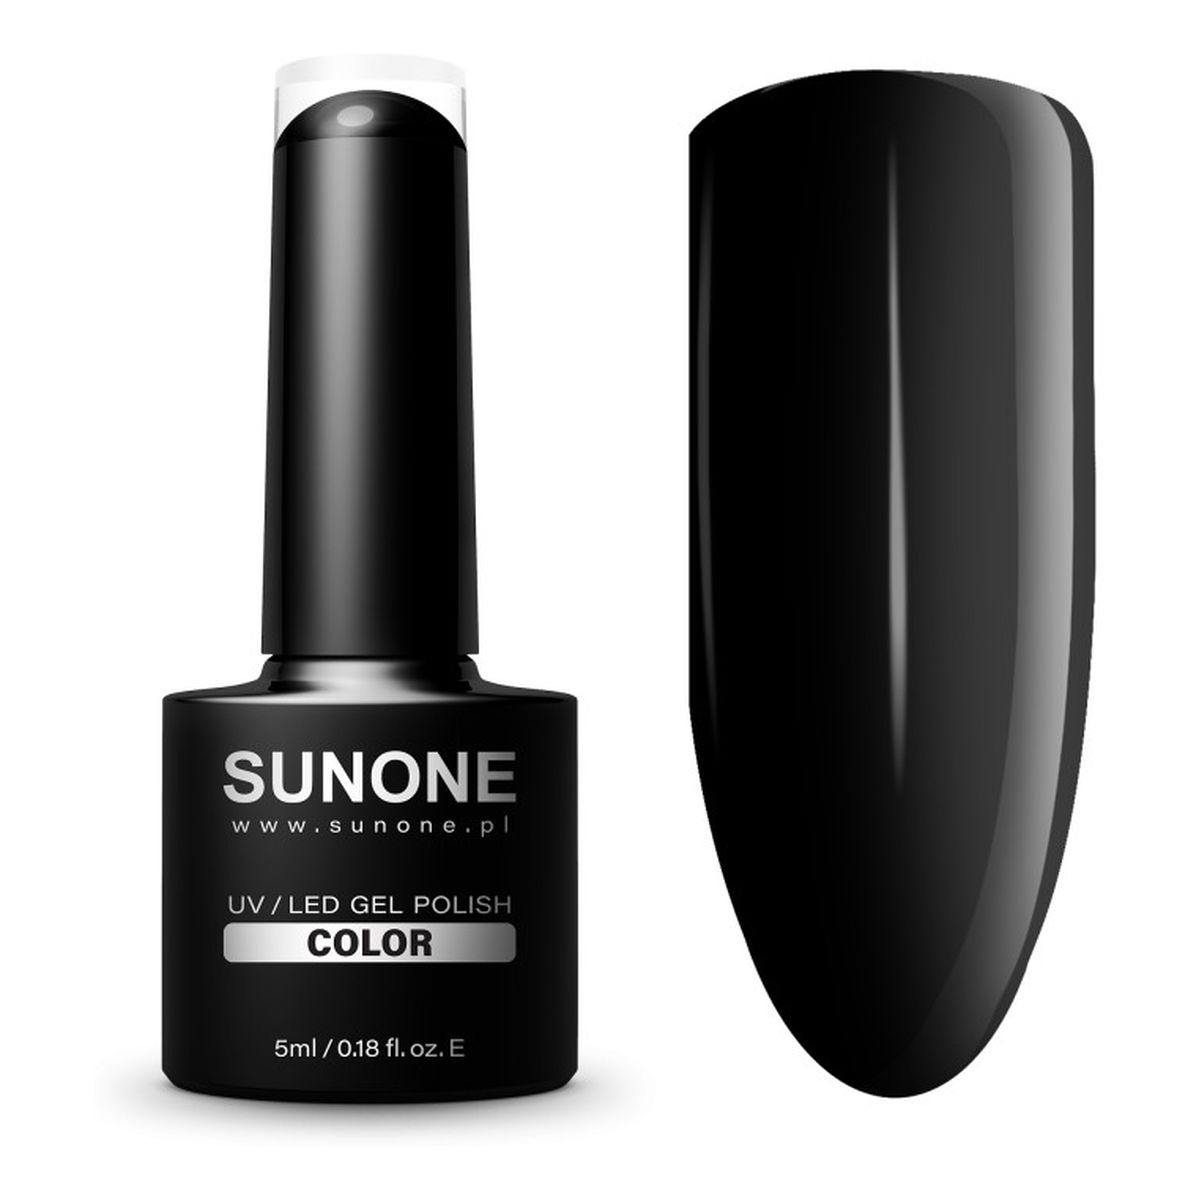 Sunone UV/LED Gel Polish Color lakier hybrydowy 5ml